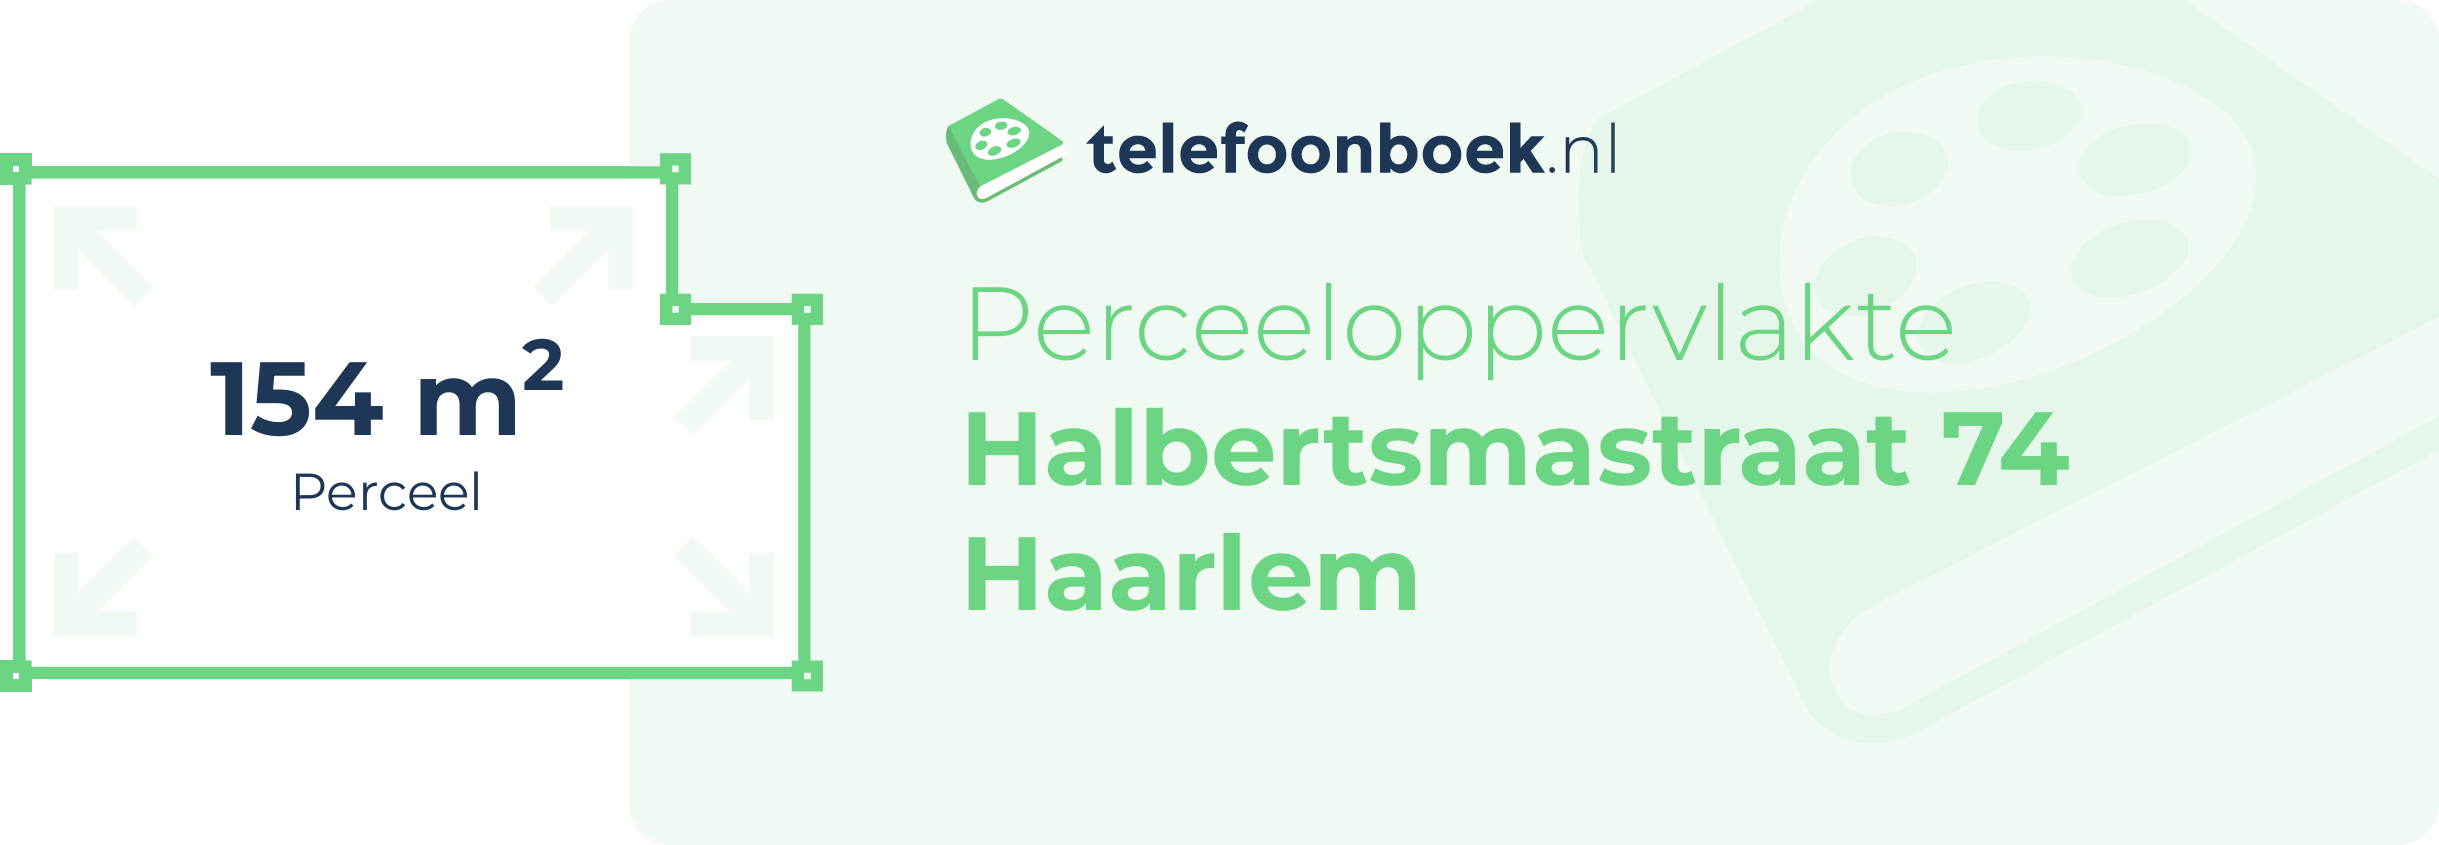 Perceeloppervlakte Halbertsmastraat 74 Haarlem